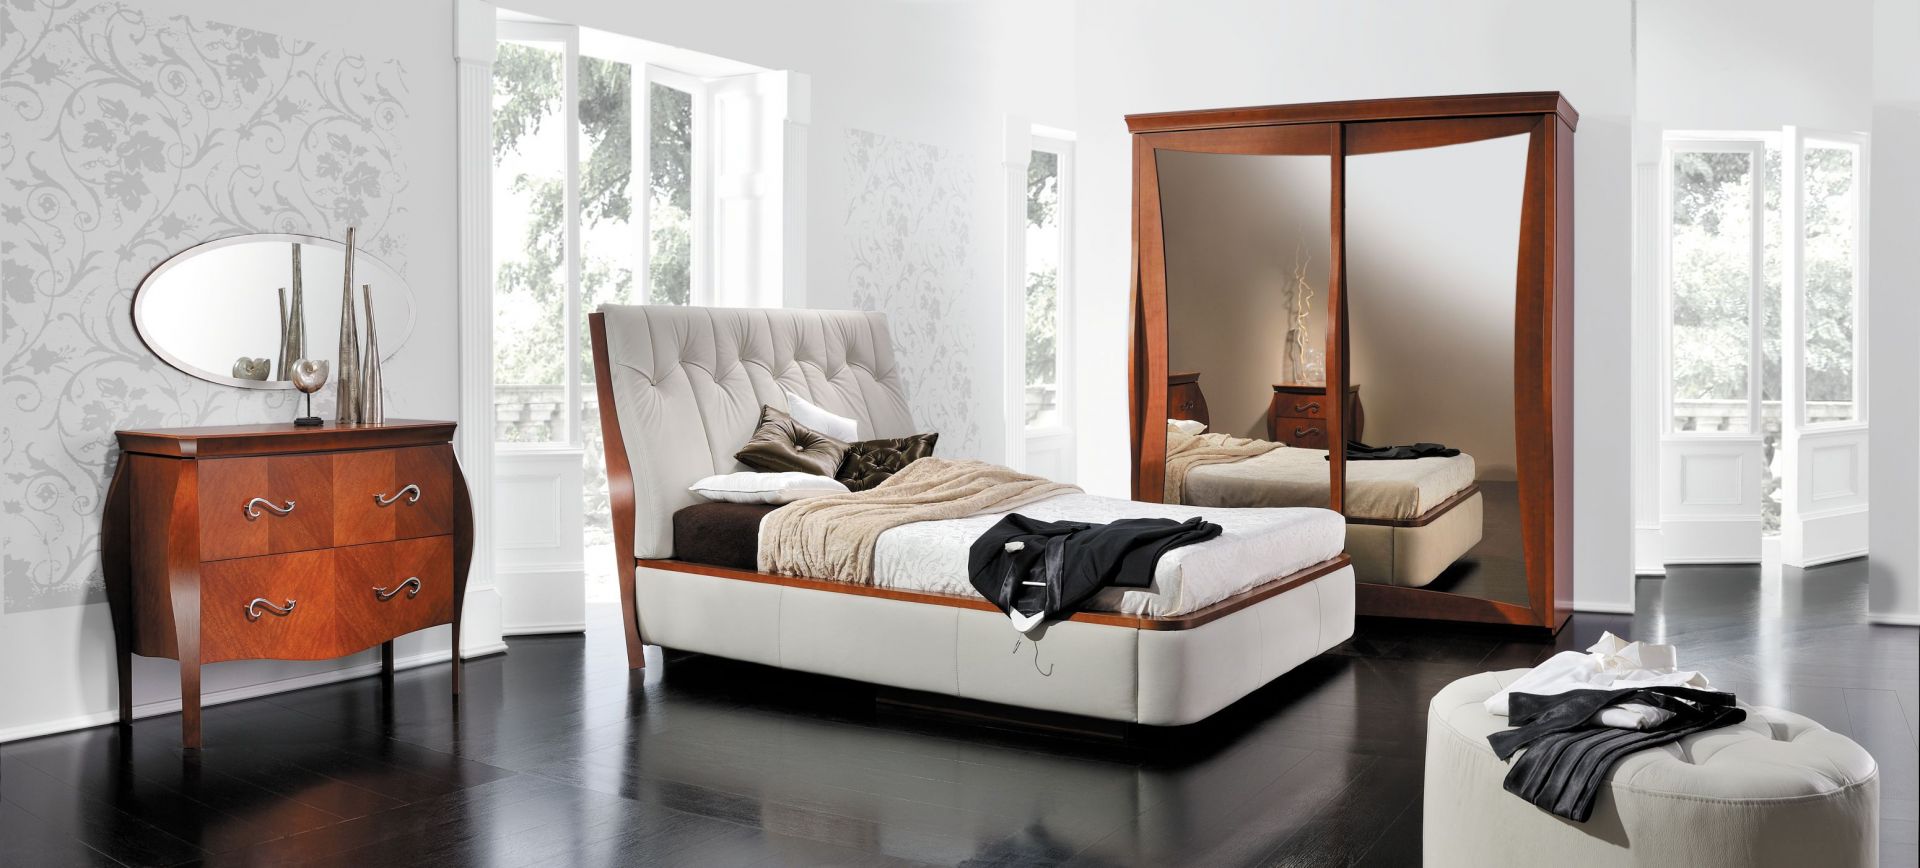 Piękne, białe łóżko z nietypowo tapicerowanym zagłówkiem. Wykończenie srewnianymi elementami dodaje mu jeszcze większej elegancji. Fot. Paged Meble